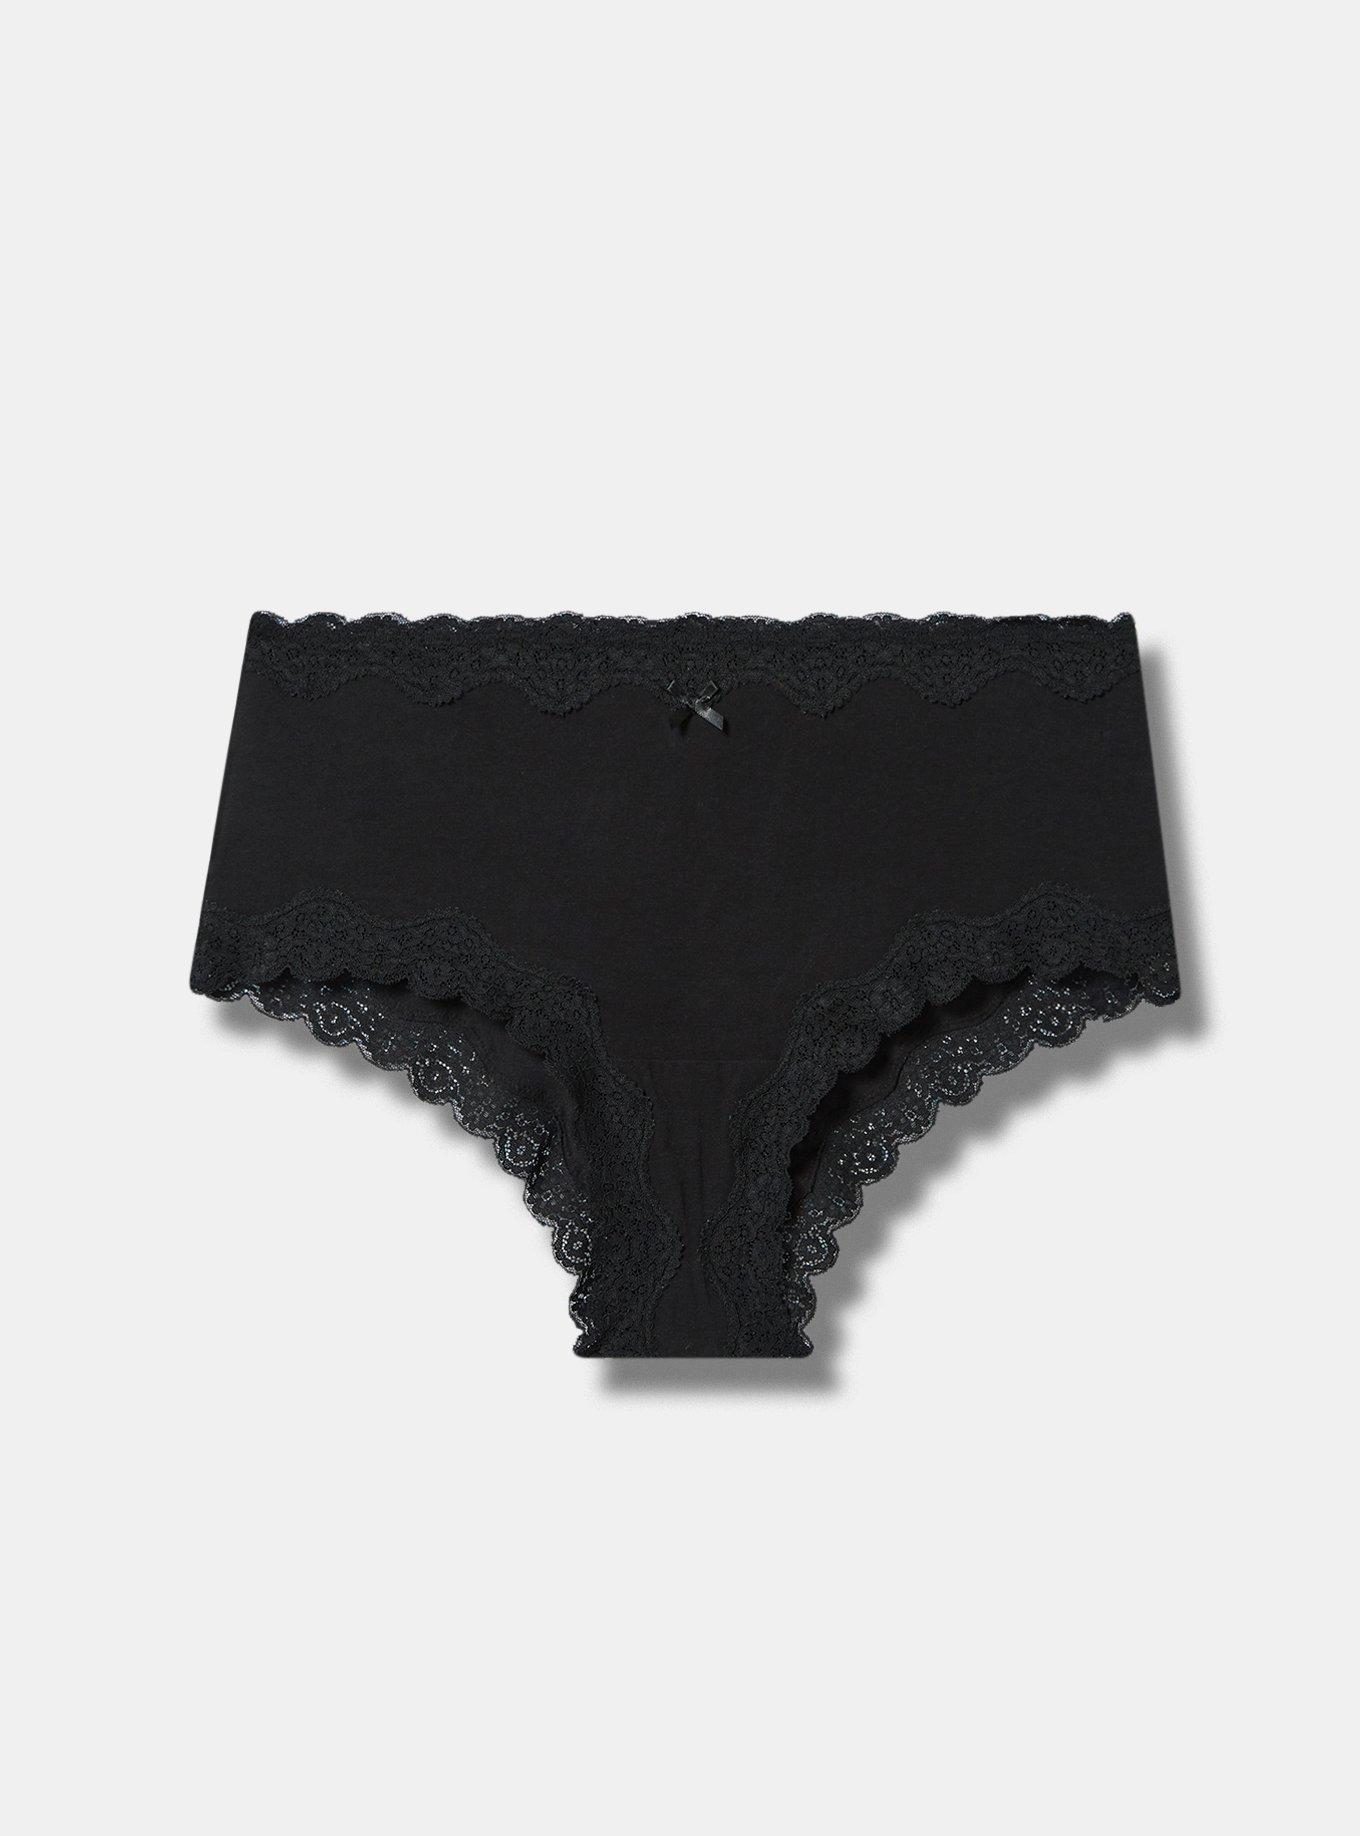 Lace-Waist Cotton Cheeky Panty | Victoria's Secret Australia